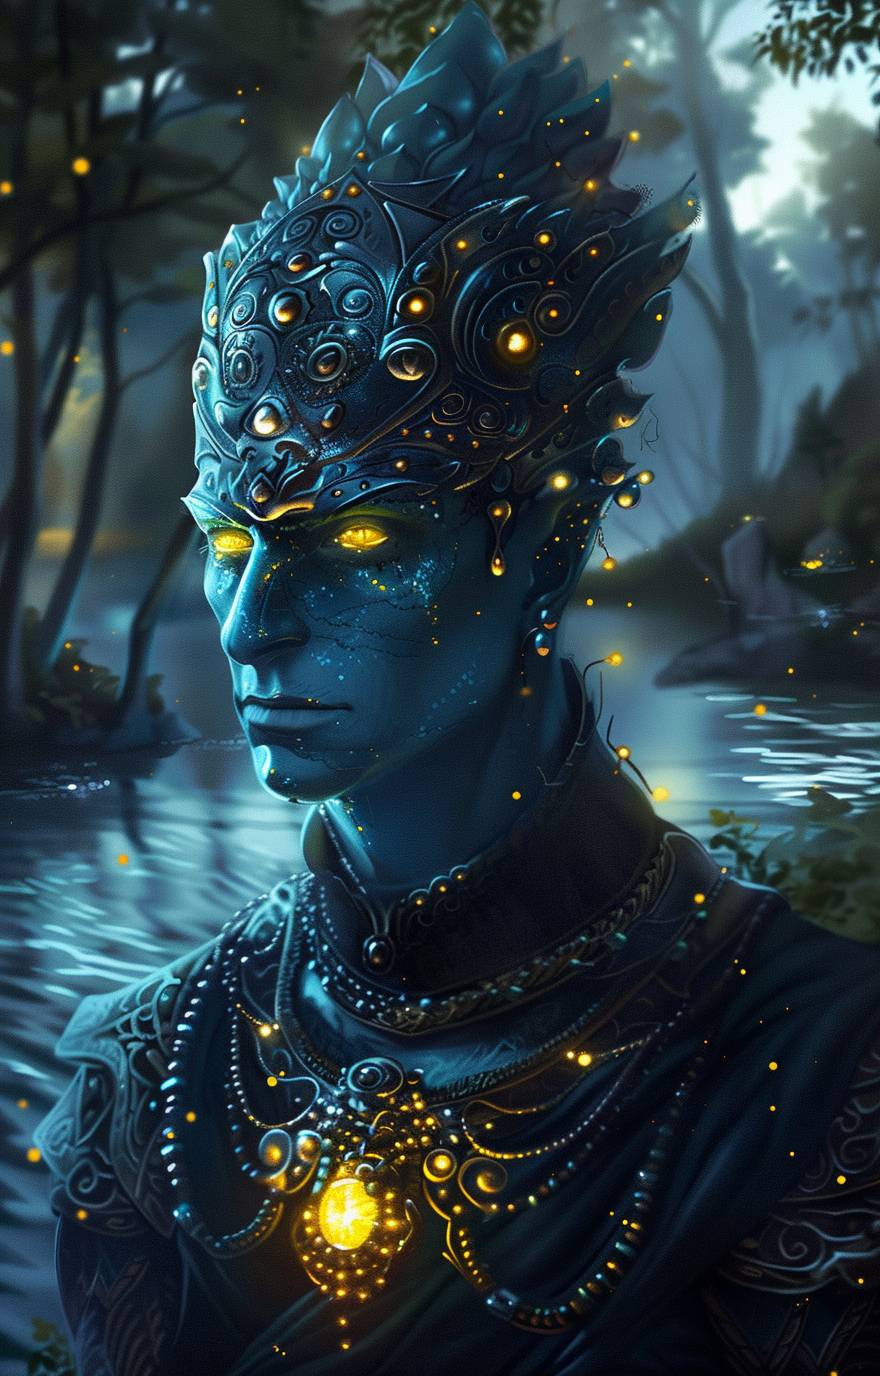 宇宙を思わせるエレガントな頭飾りをした青い肌の人型、発光する目と胸から放たれる黄色いオーラ、細密なシルバージュエリーで装飾され、木々に囲まれています。背景は暗く、水面には光の反射があり、神秘的な雰囲気を醸し出しています。